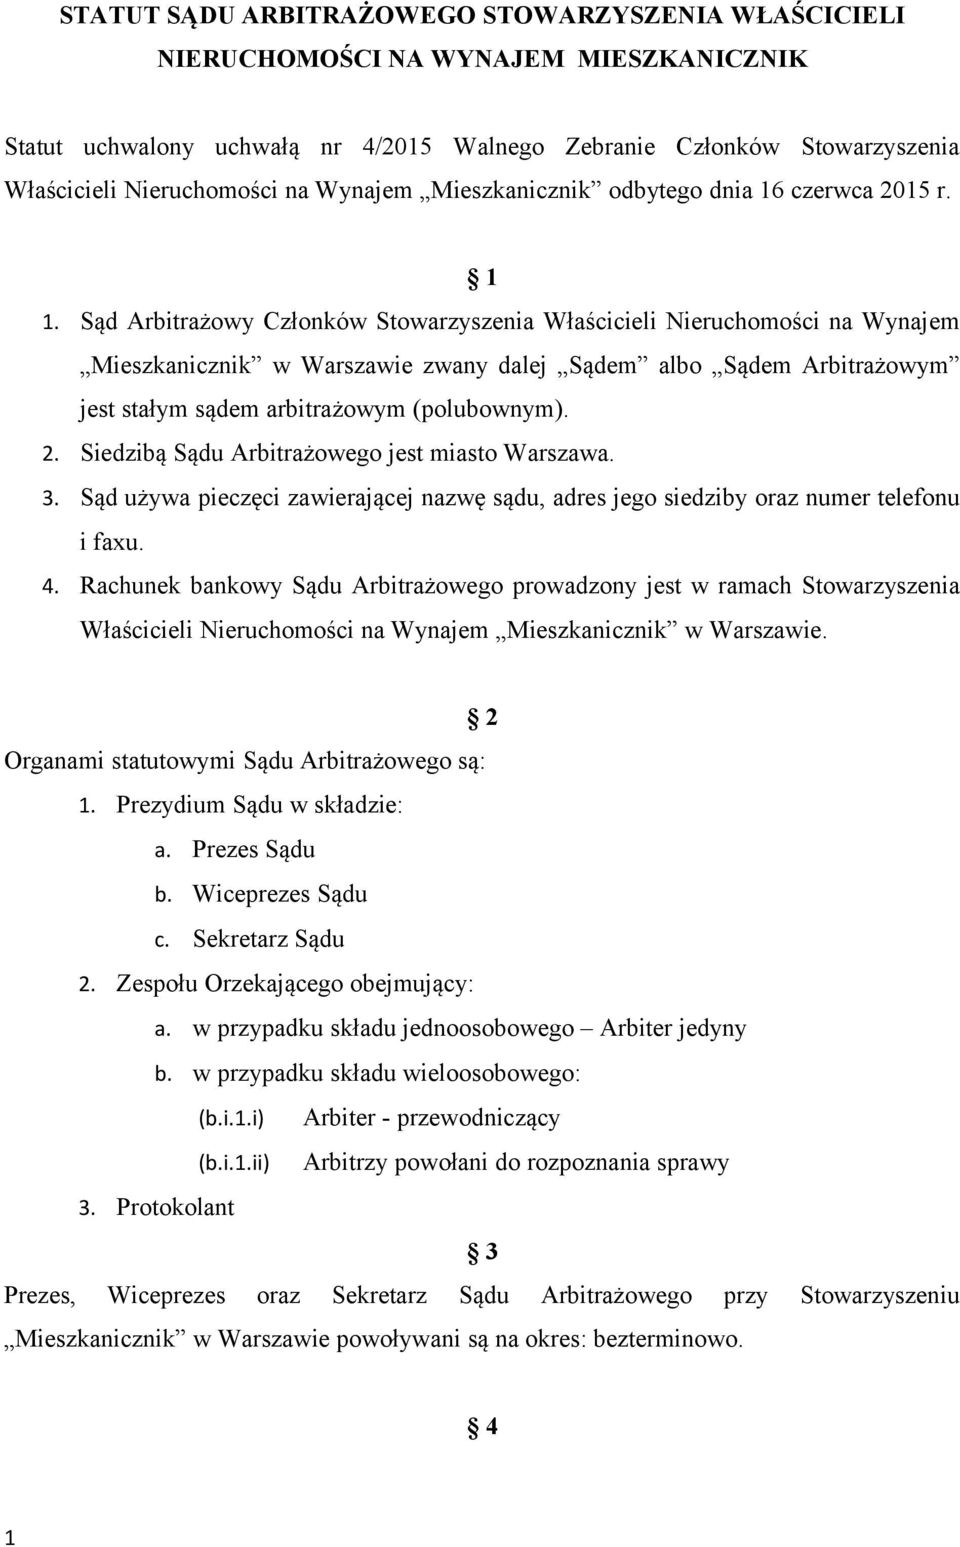 Sąd Arbitrażowy Członków Stowarzyszenia Właścicieli Nieruchomości na Wynajem Mieszkanicznik w Warszawie zwany dalej Sądem albo Sądem Arbitrażowym jest stałym sądem arbitrażowym (polubownym). 2.